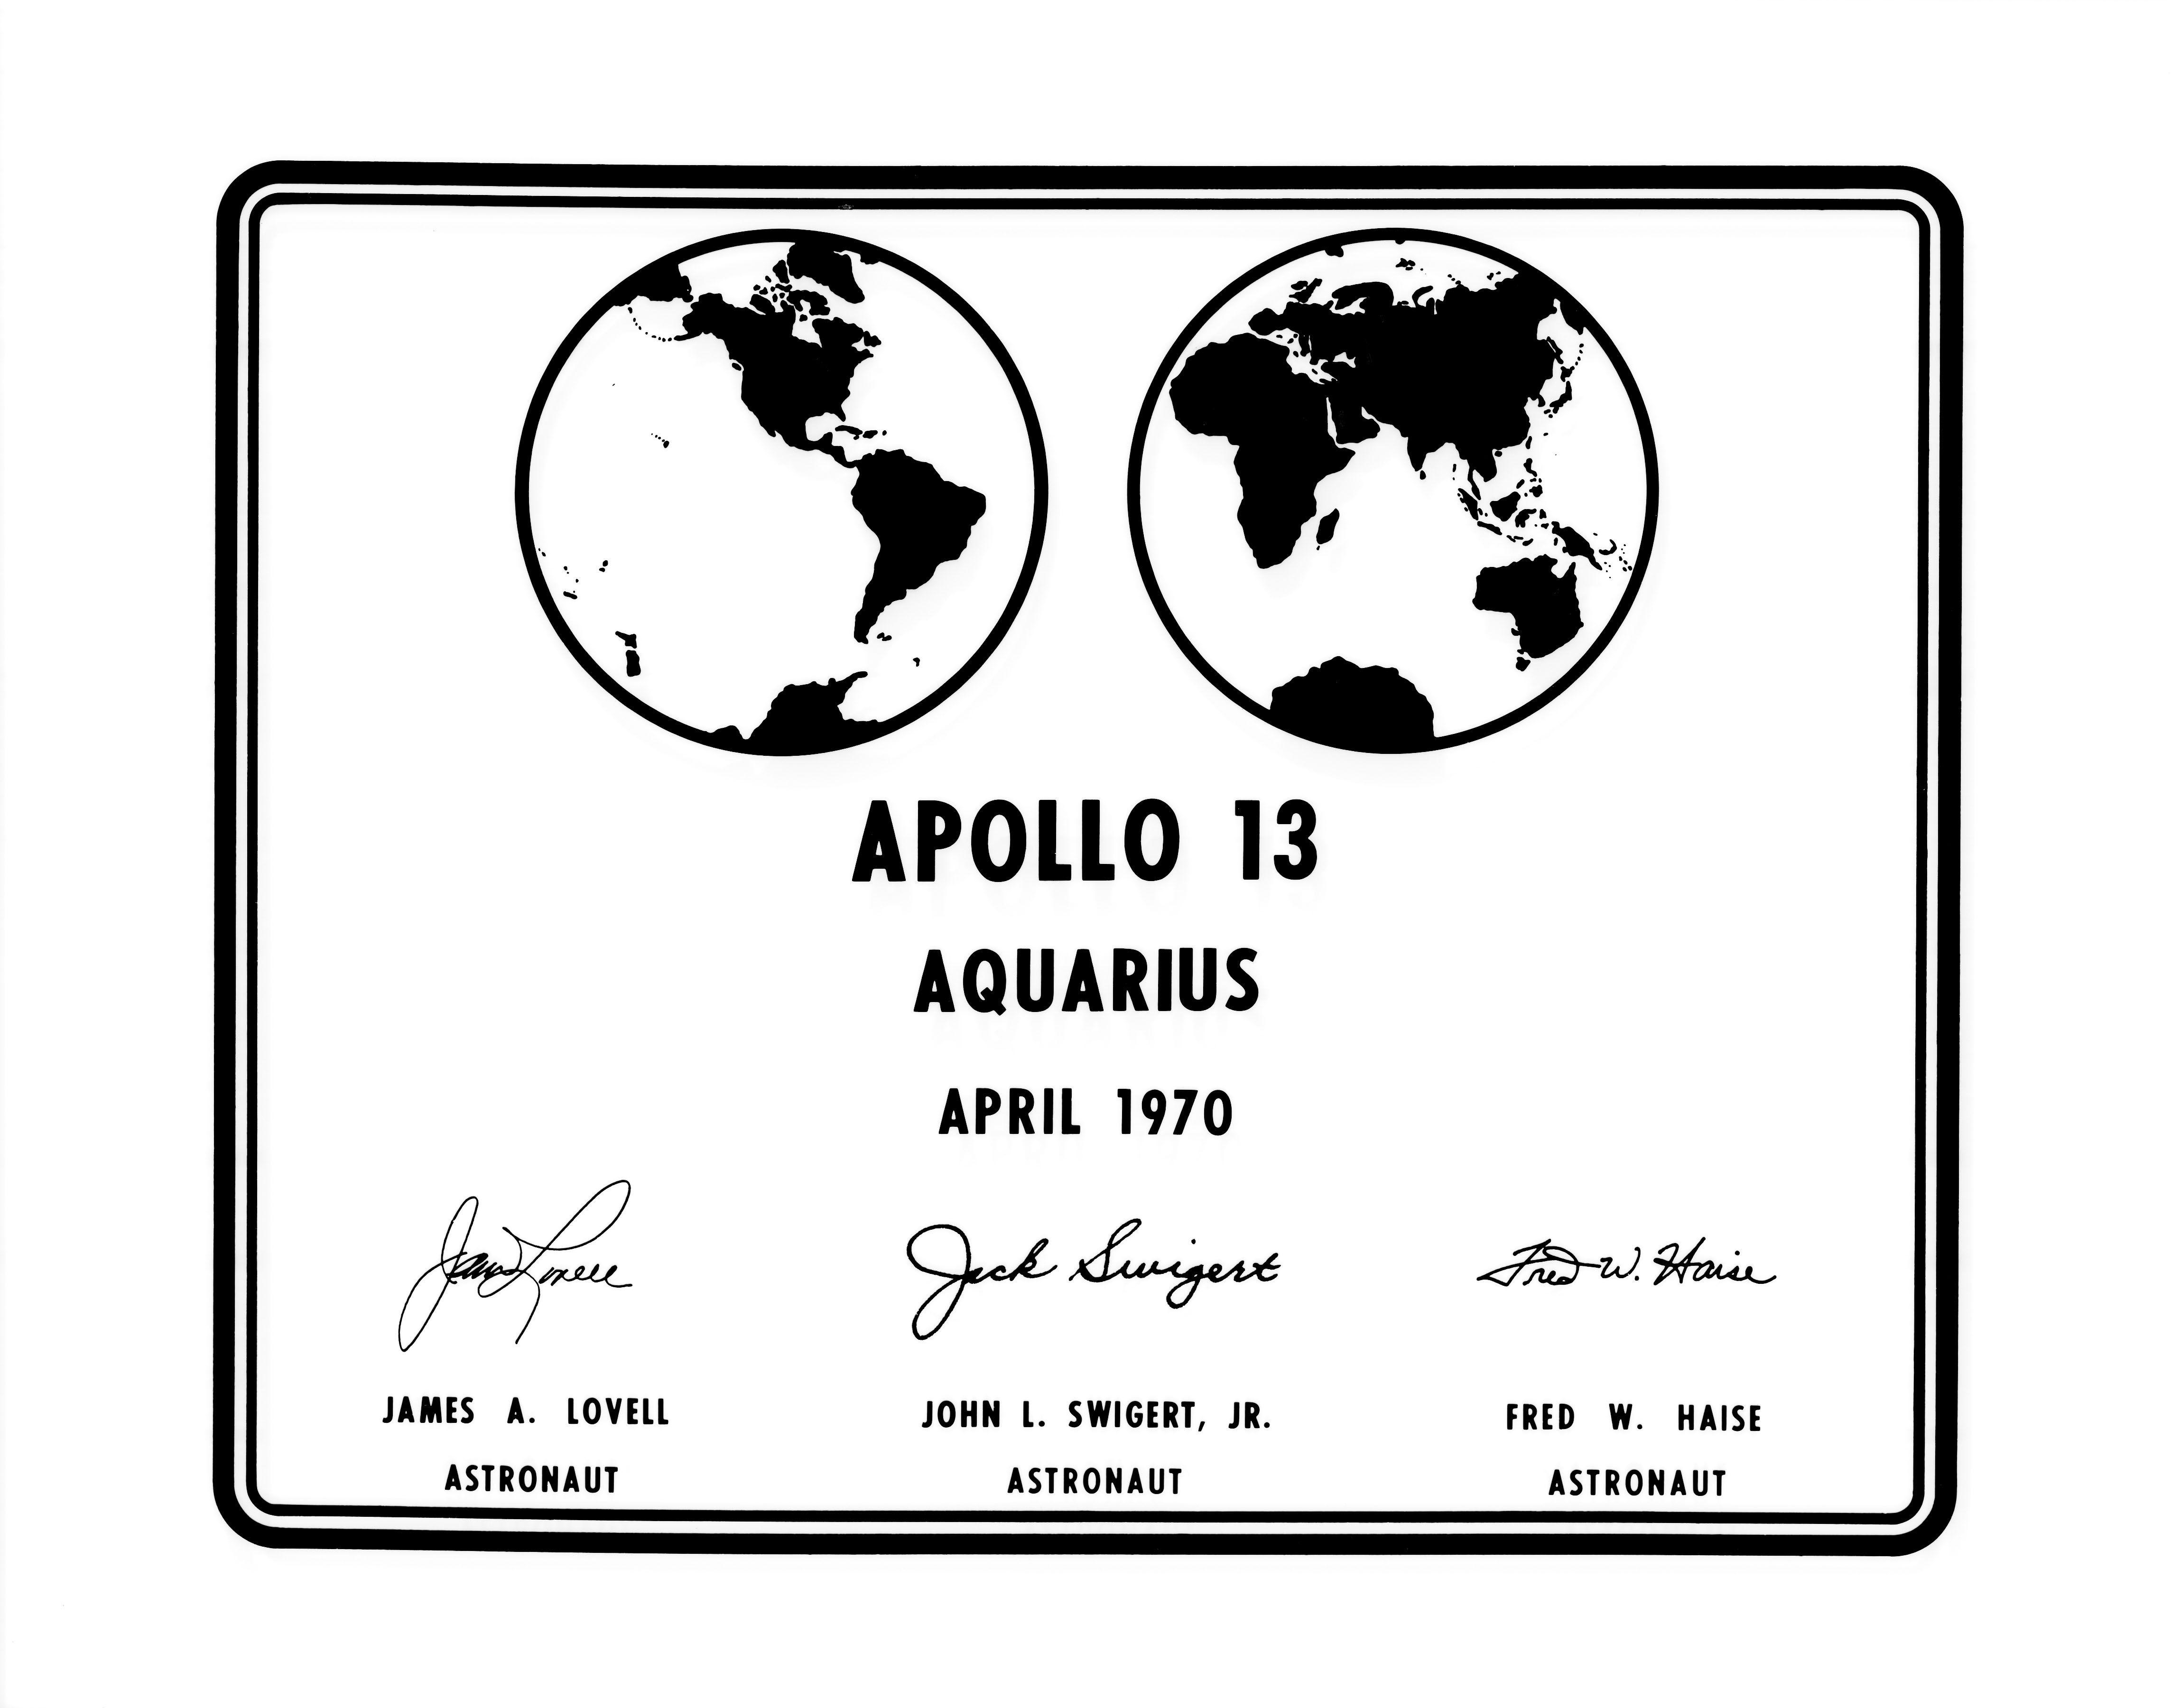 Small NASA Commander Logo - Photographic replica of the plaque Apollo 13 astronauts will leave ...